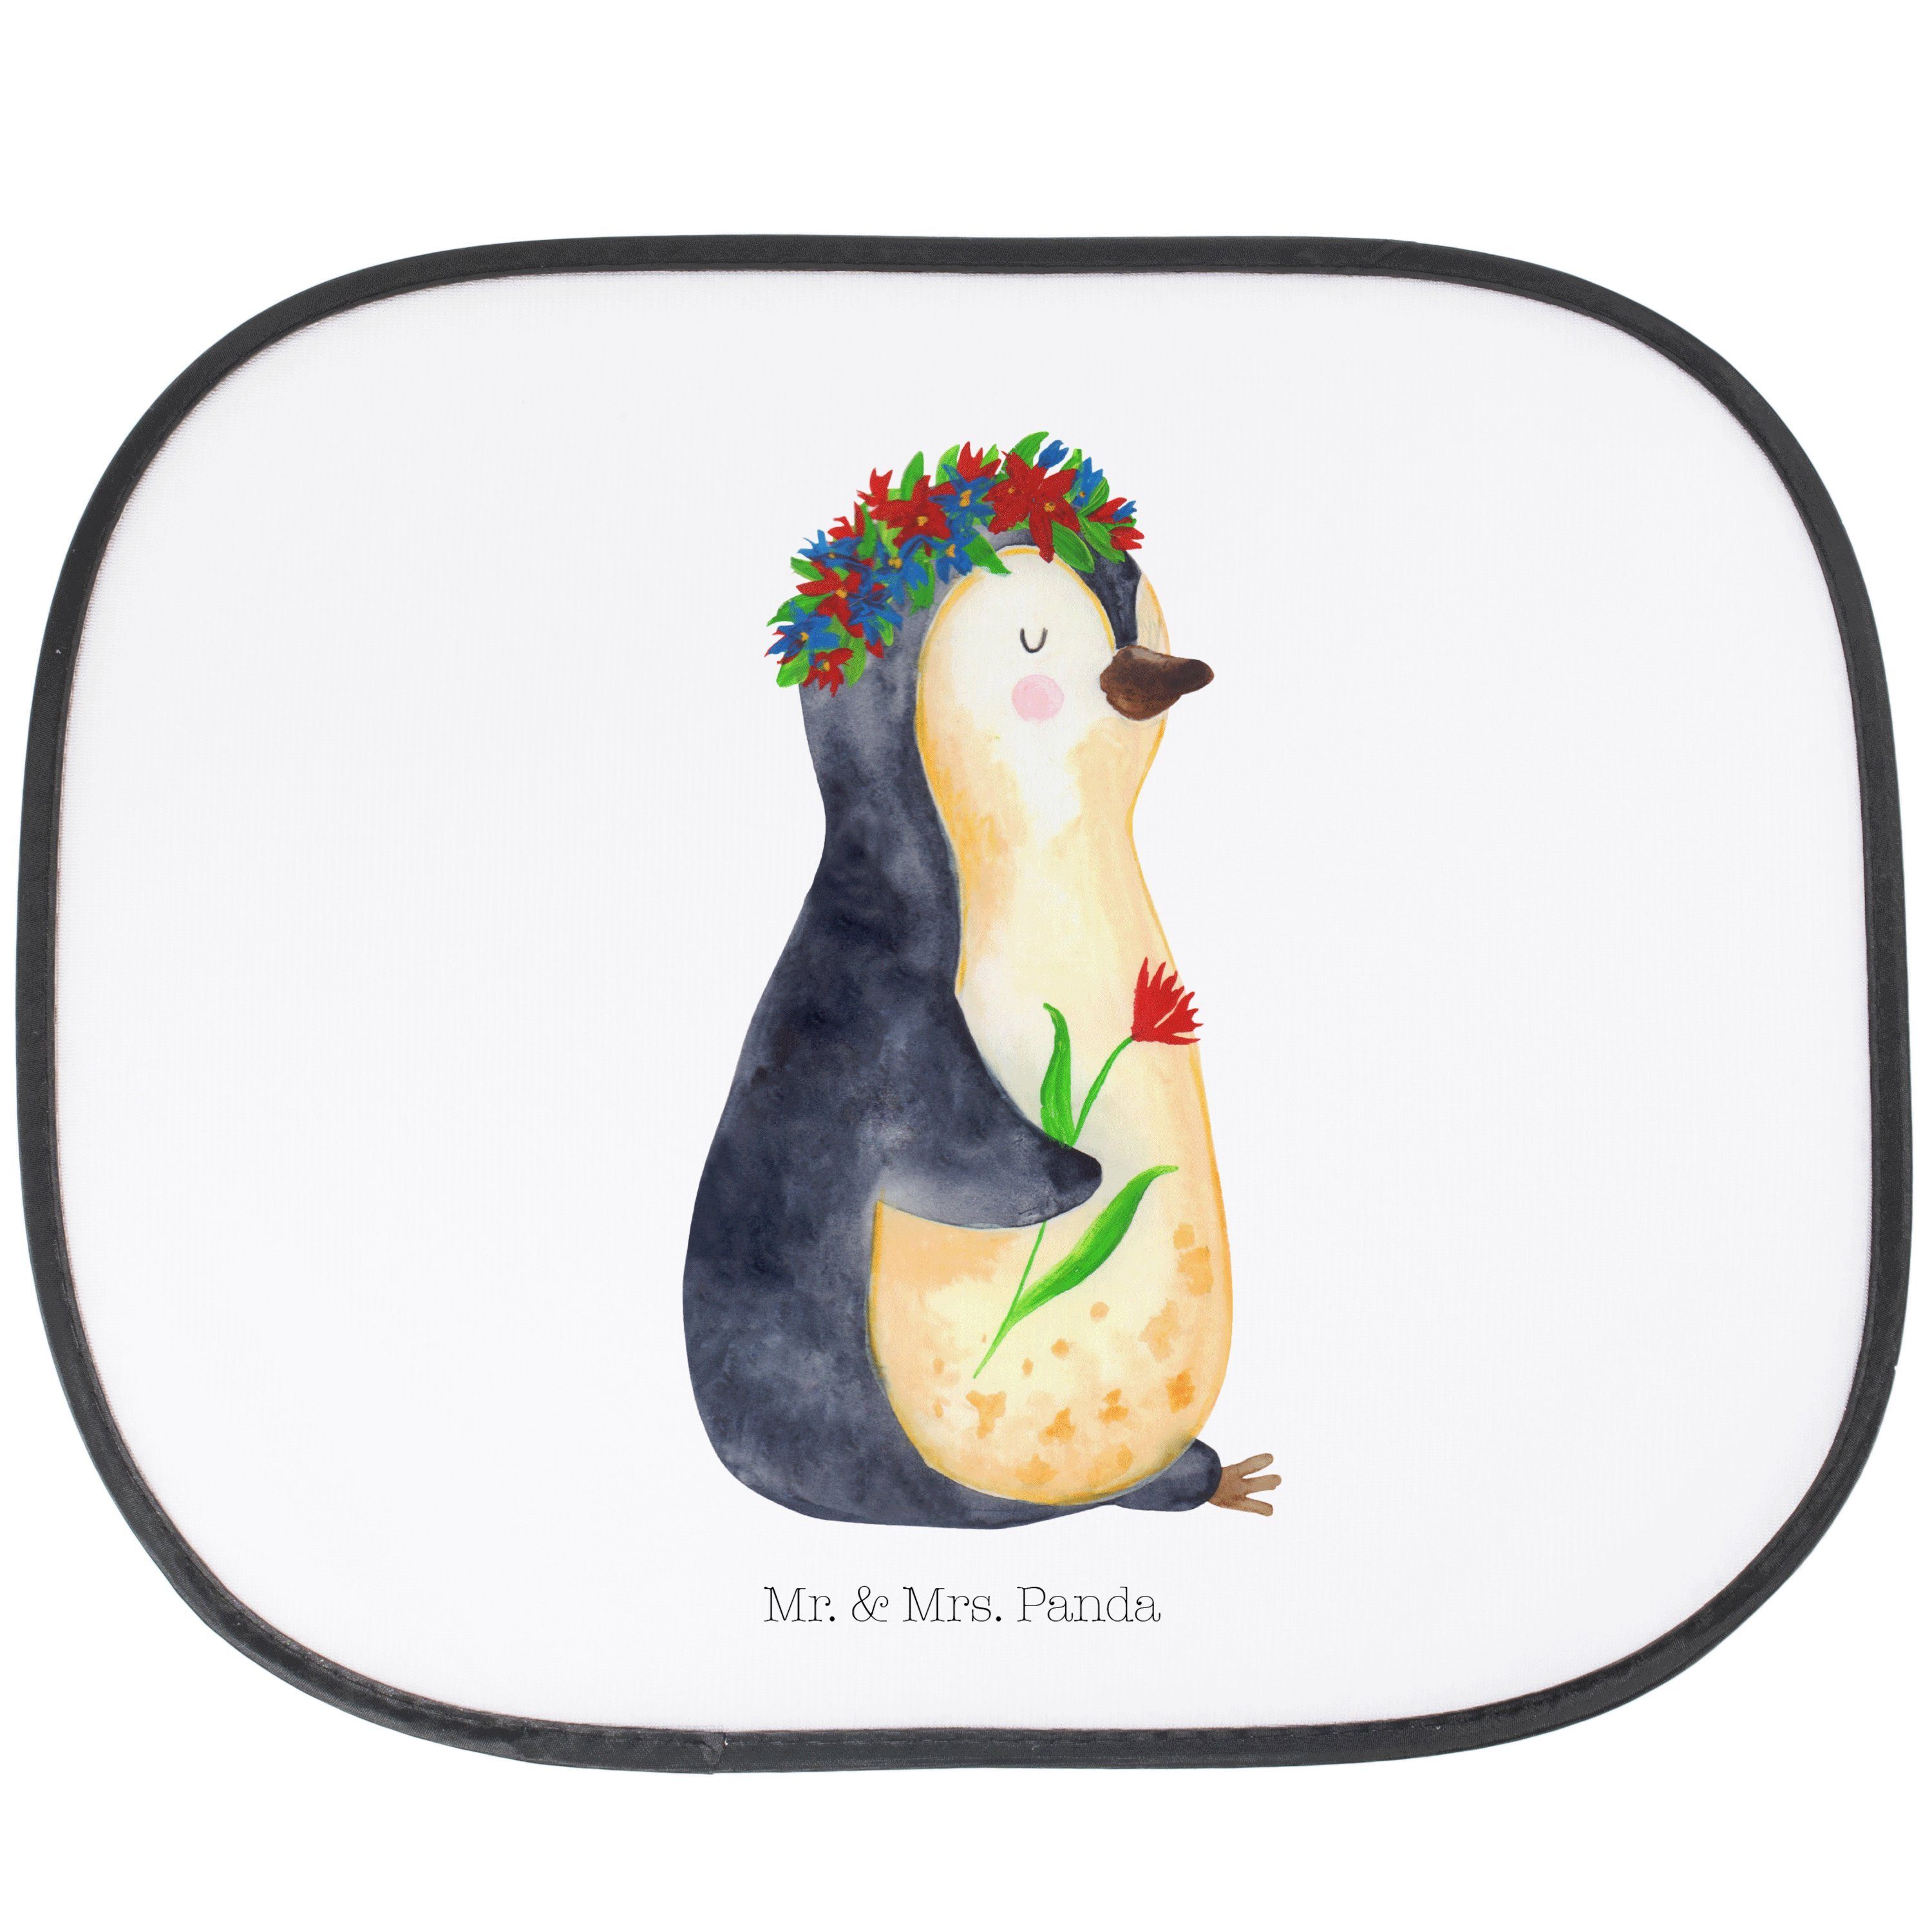 Sonnenschutz Pinguin Blumenkranz - Weiß - Geschenk, Leben, Ziele, Sonnenschutzfoli, Mr. & Mrs. Panda, Seidenmatt